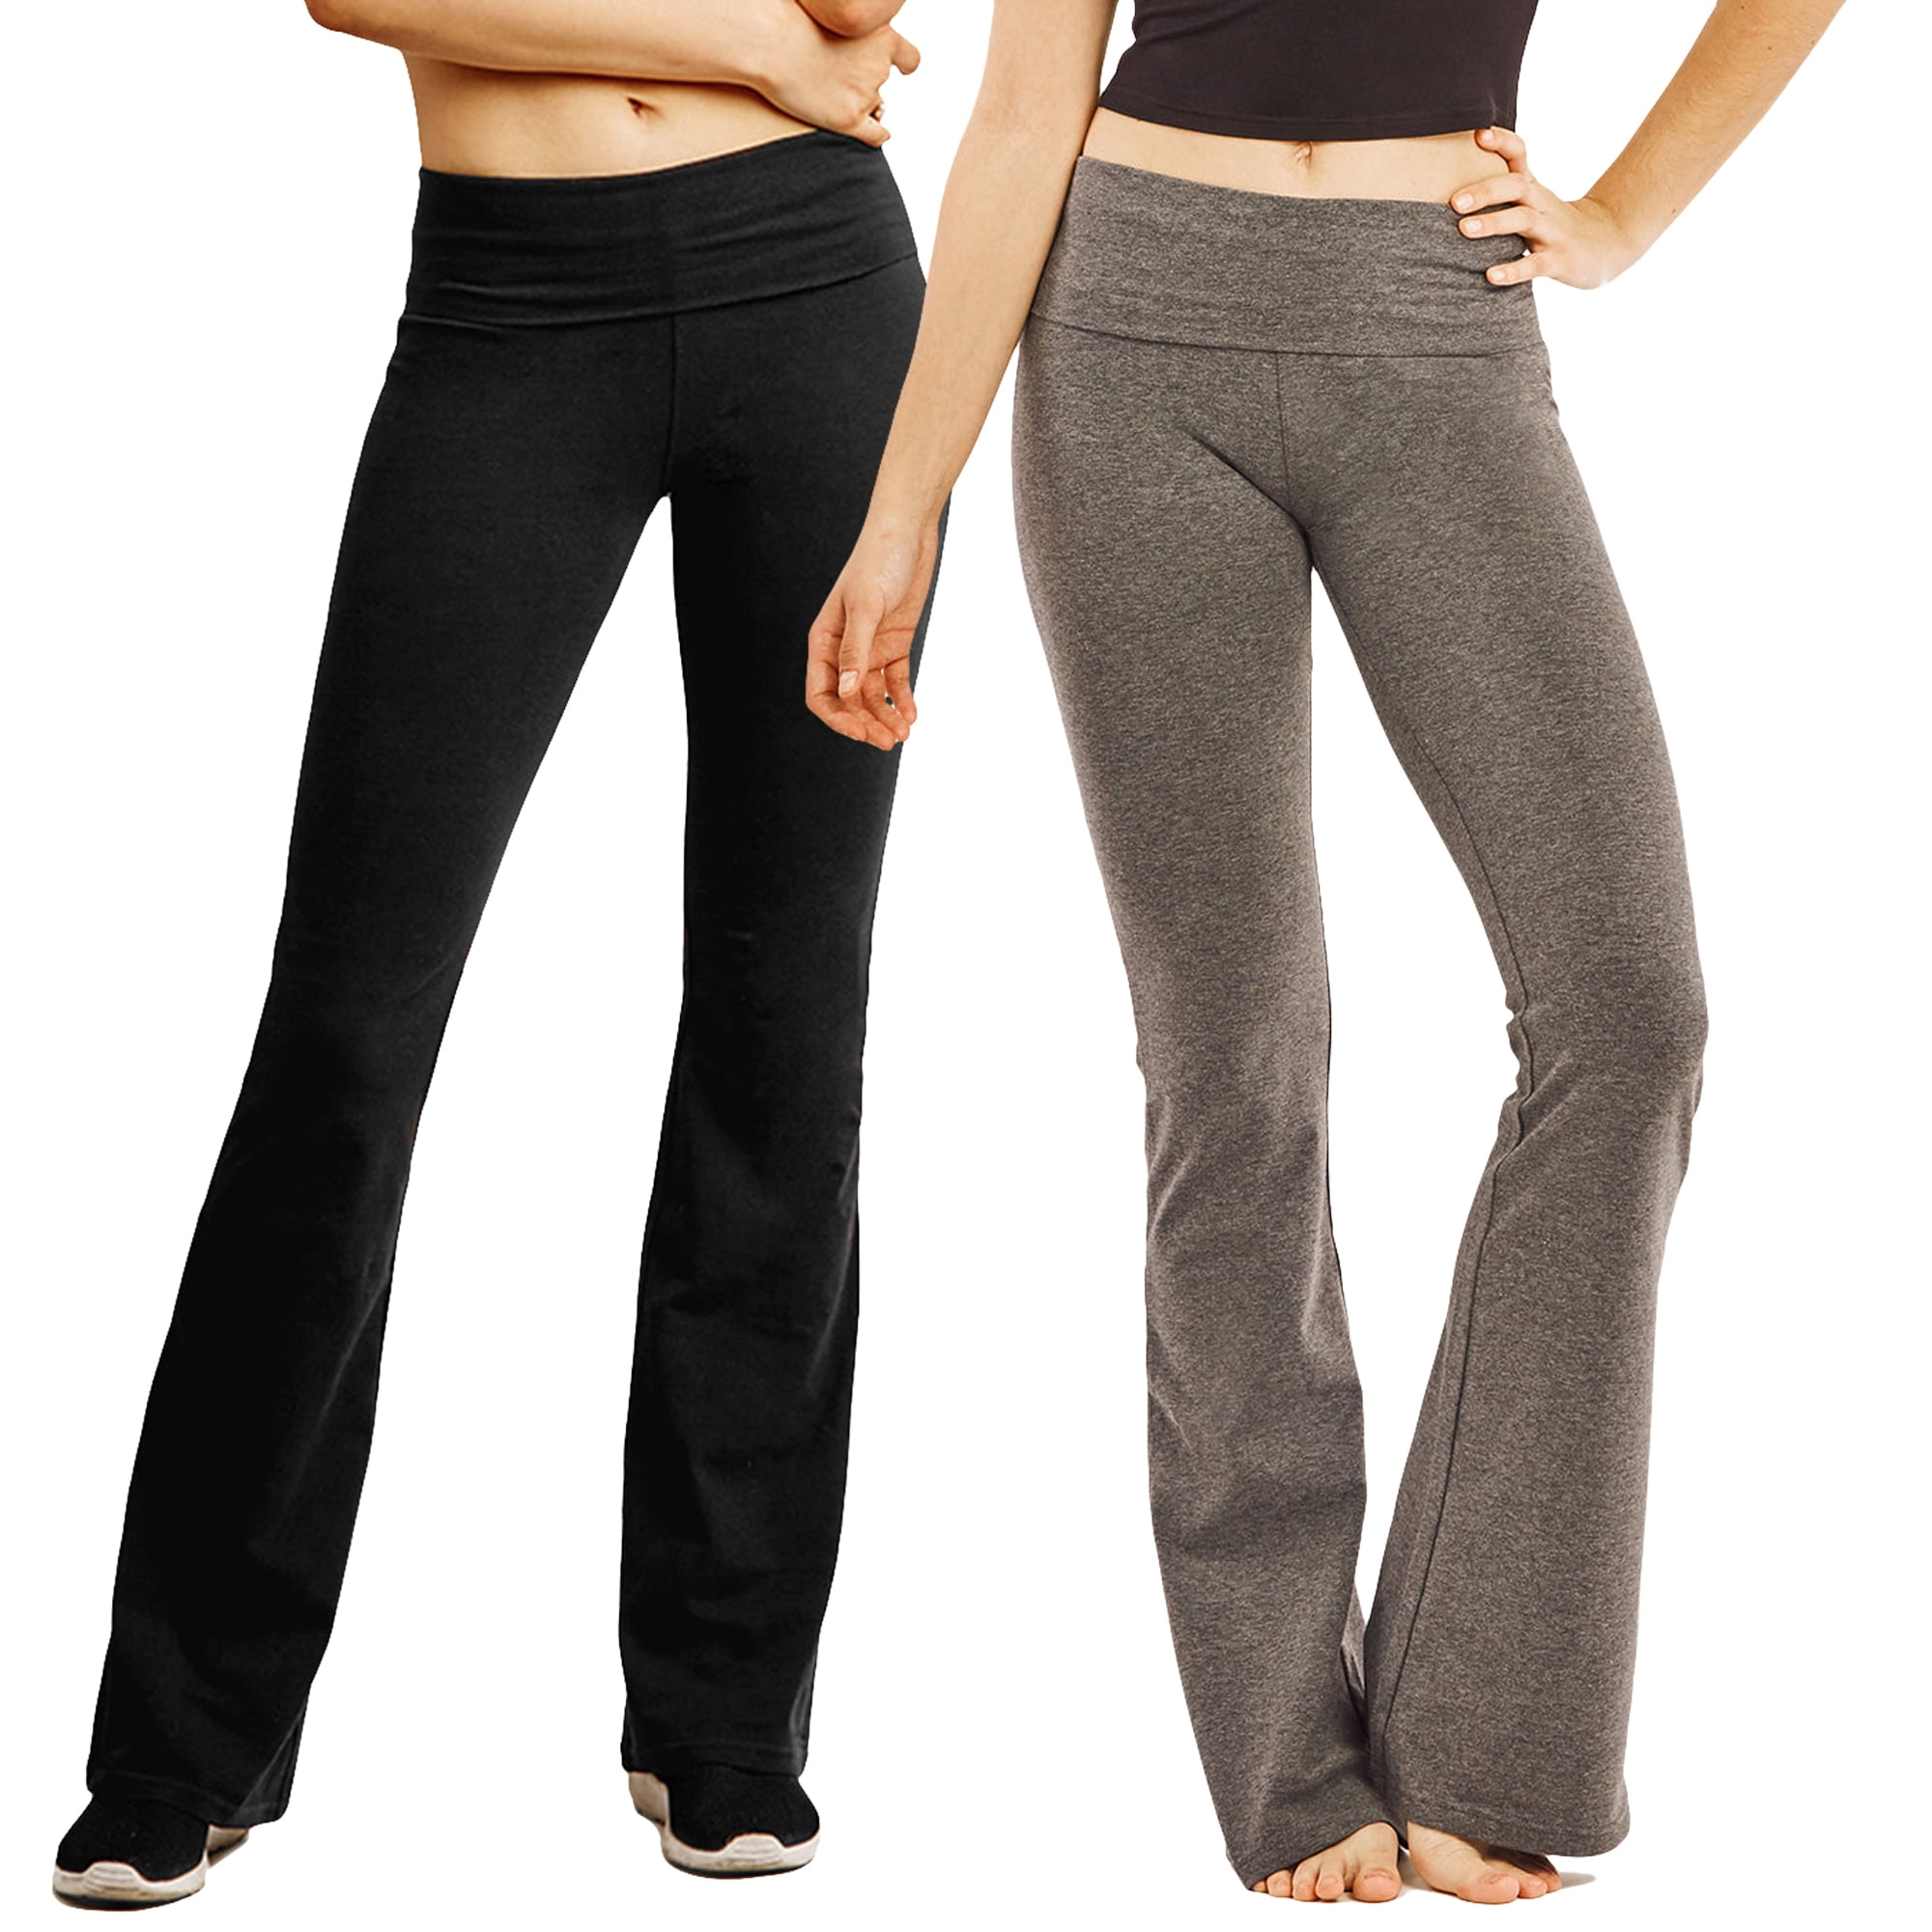 MOPAS Women Fold-Over High Waisted Flared Bottom Bootcut Basic Workout Pants  